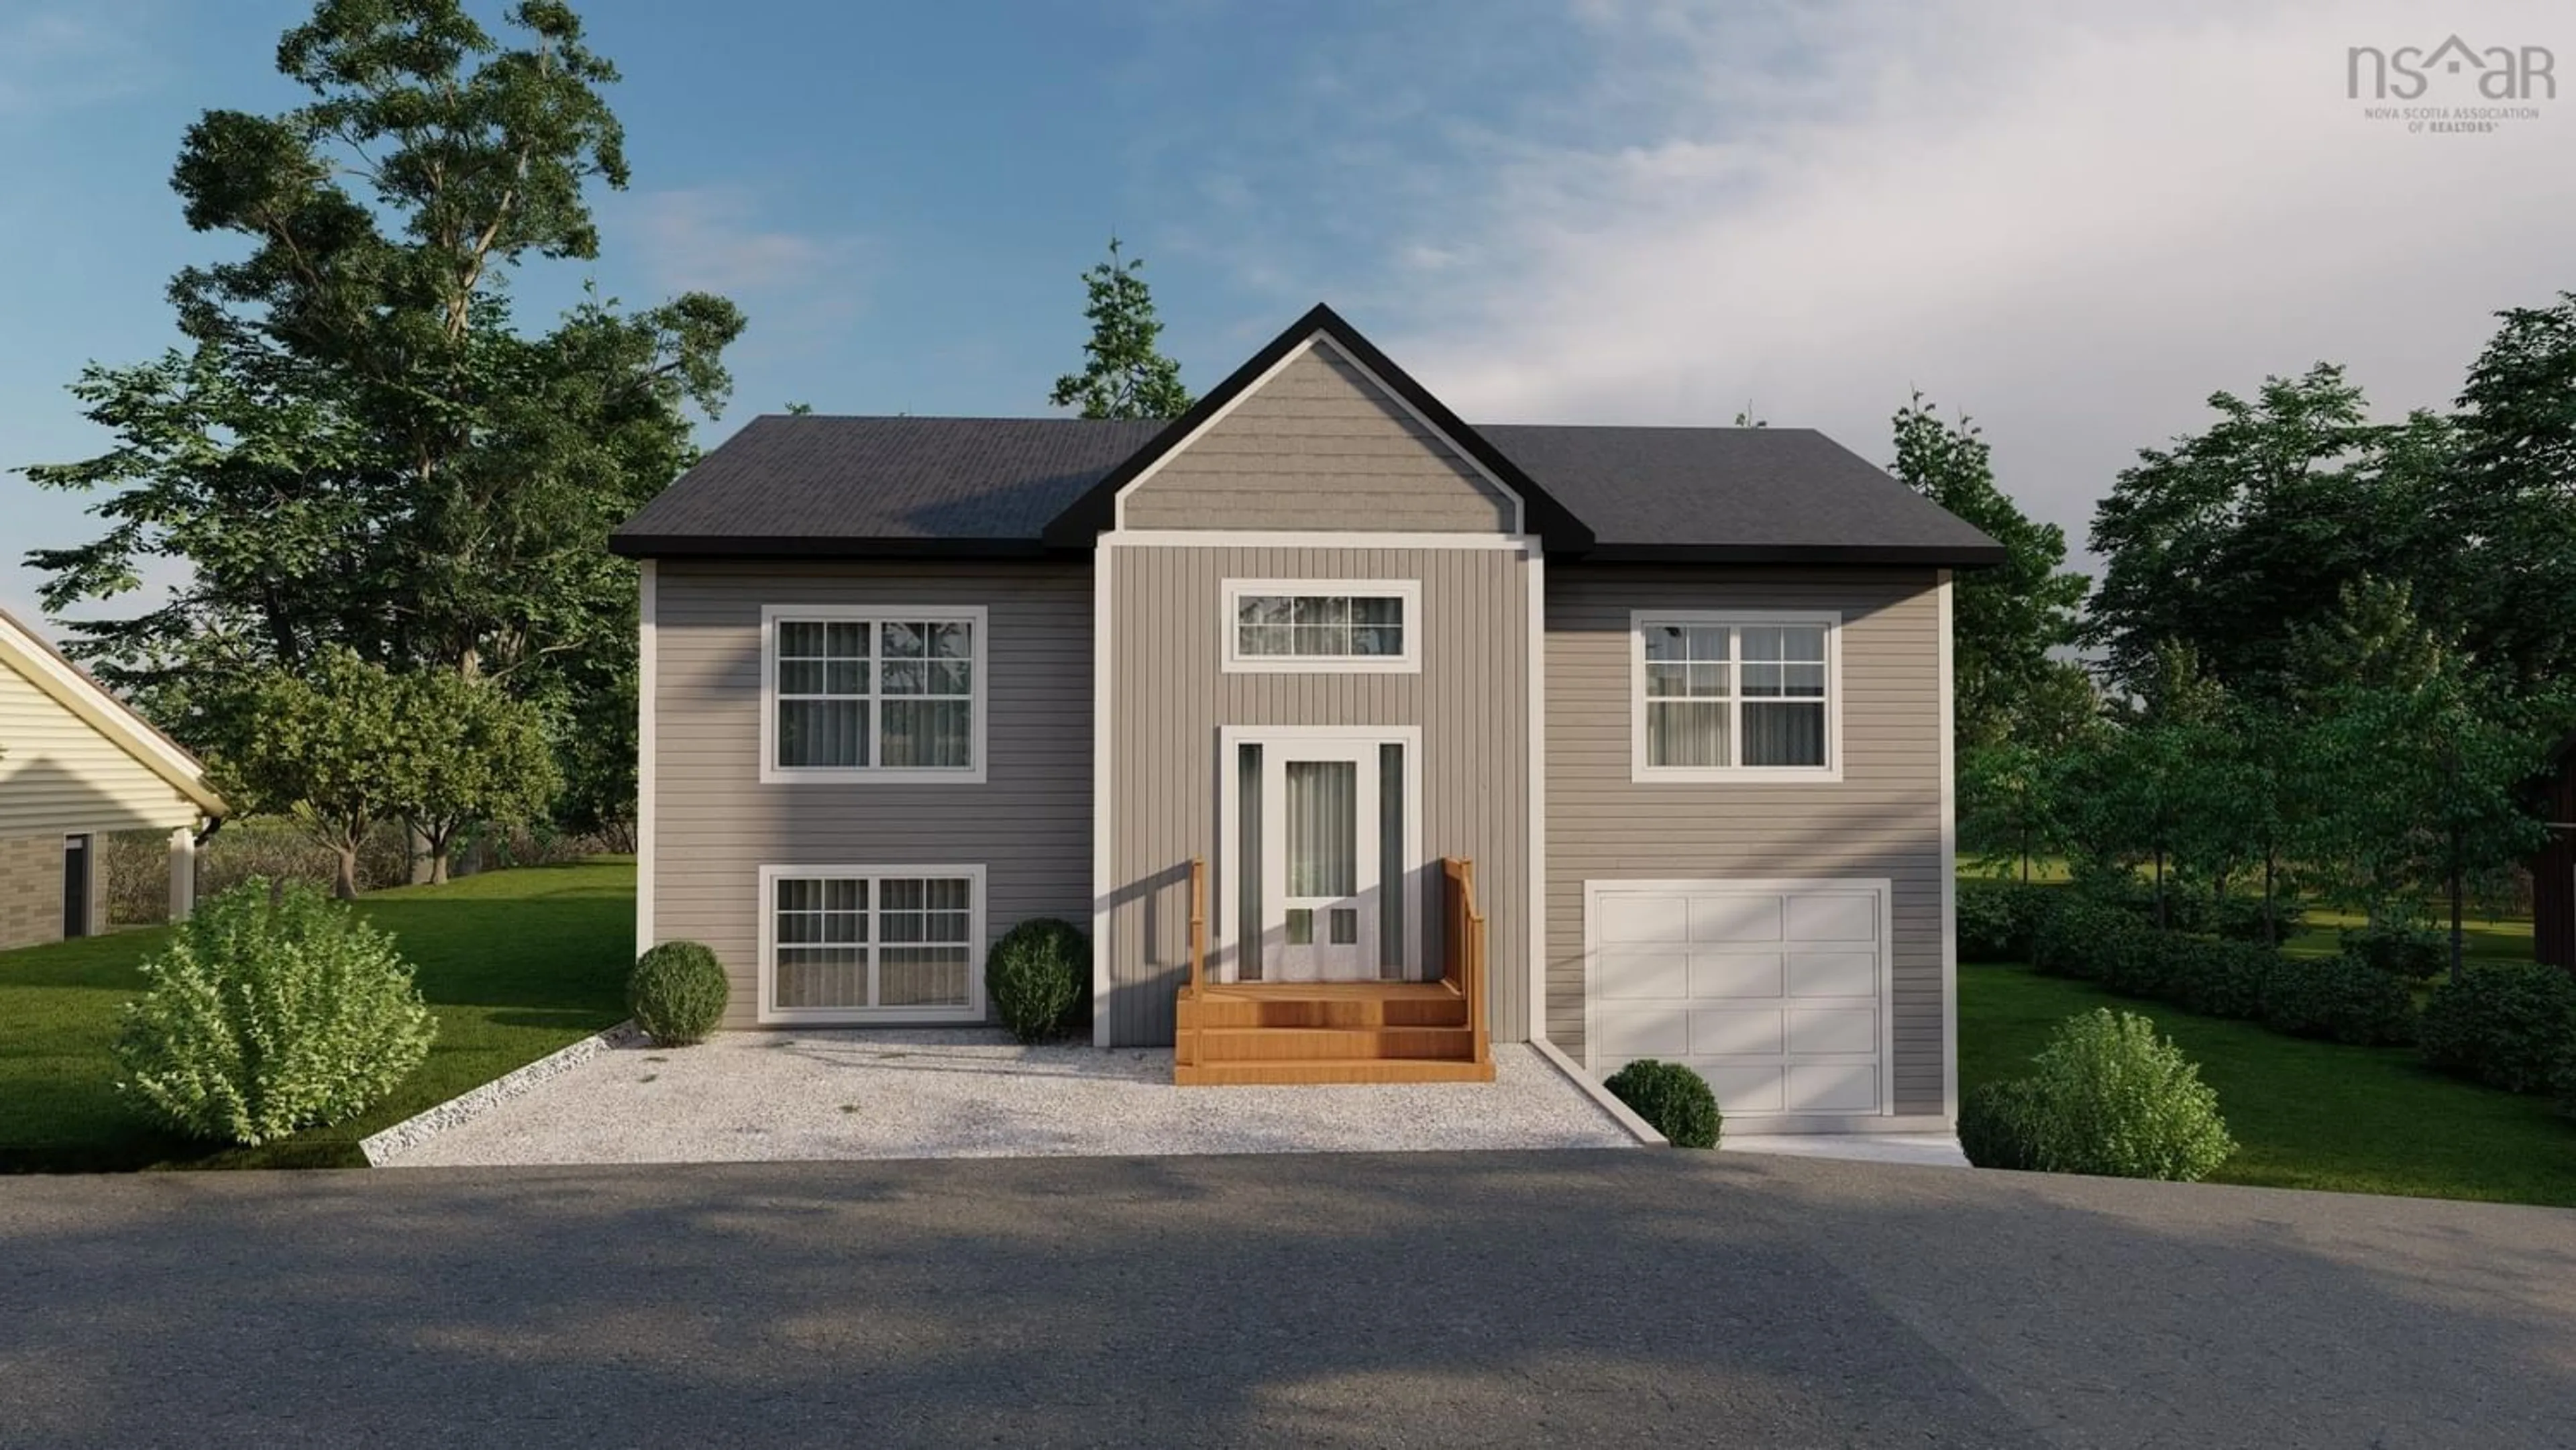 Home with stucco exterior material for Oceanstone Dr #Lot 8085, Upper Tantallon Nova Scotia B3Z 4K6